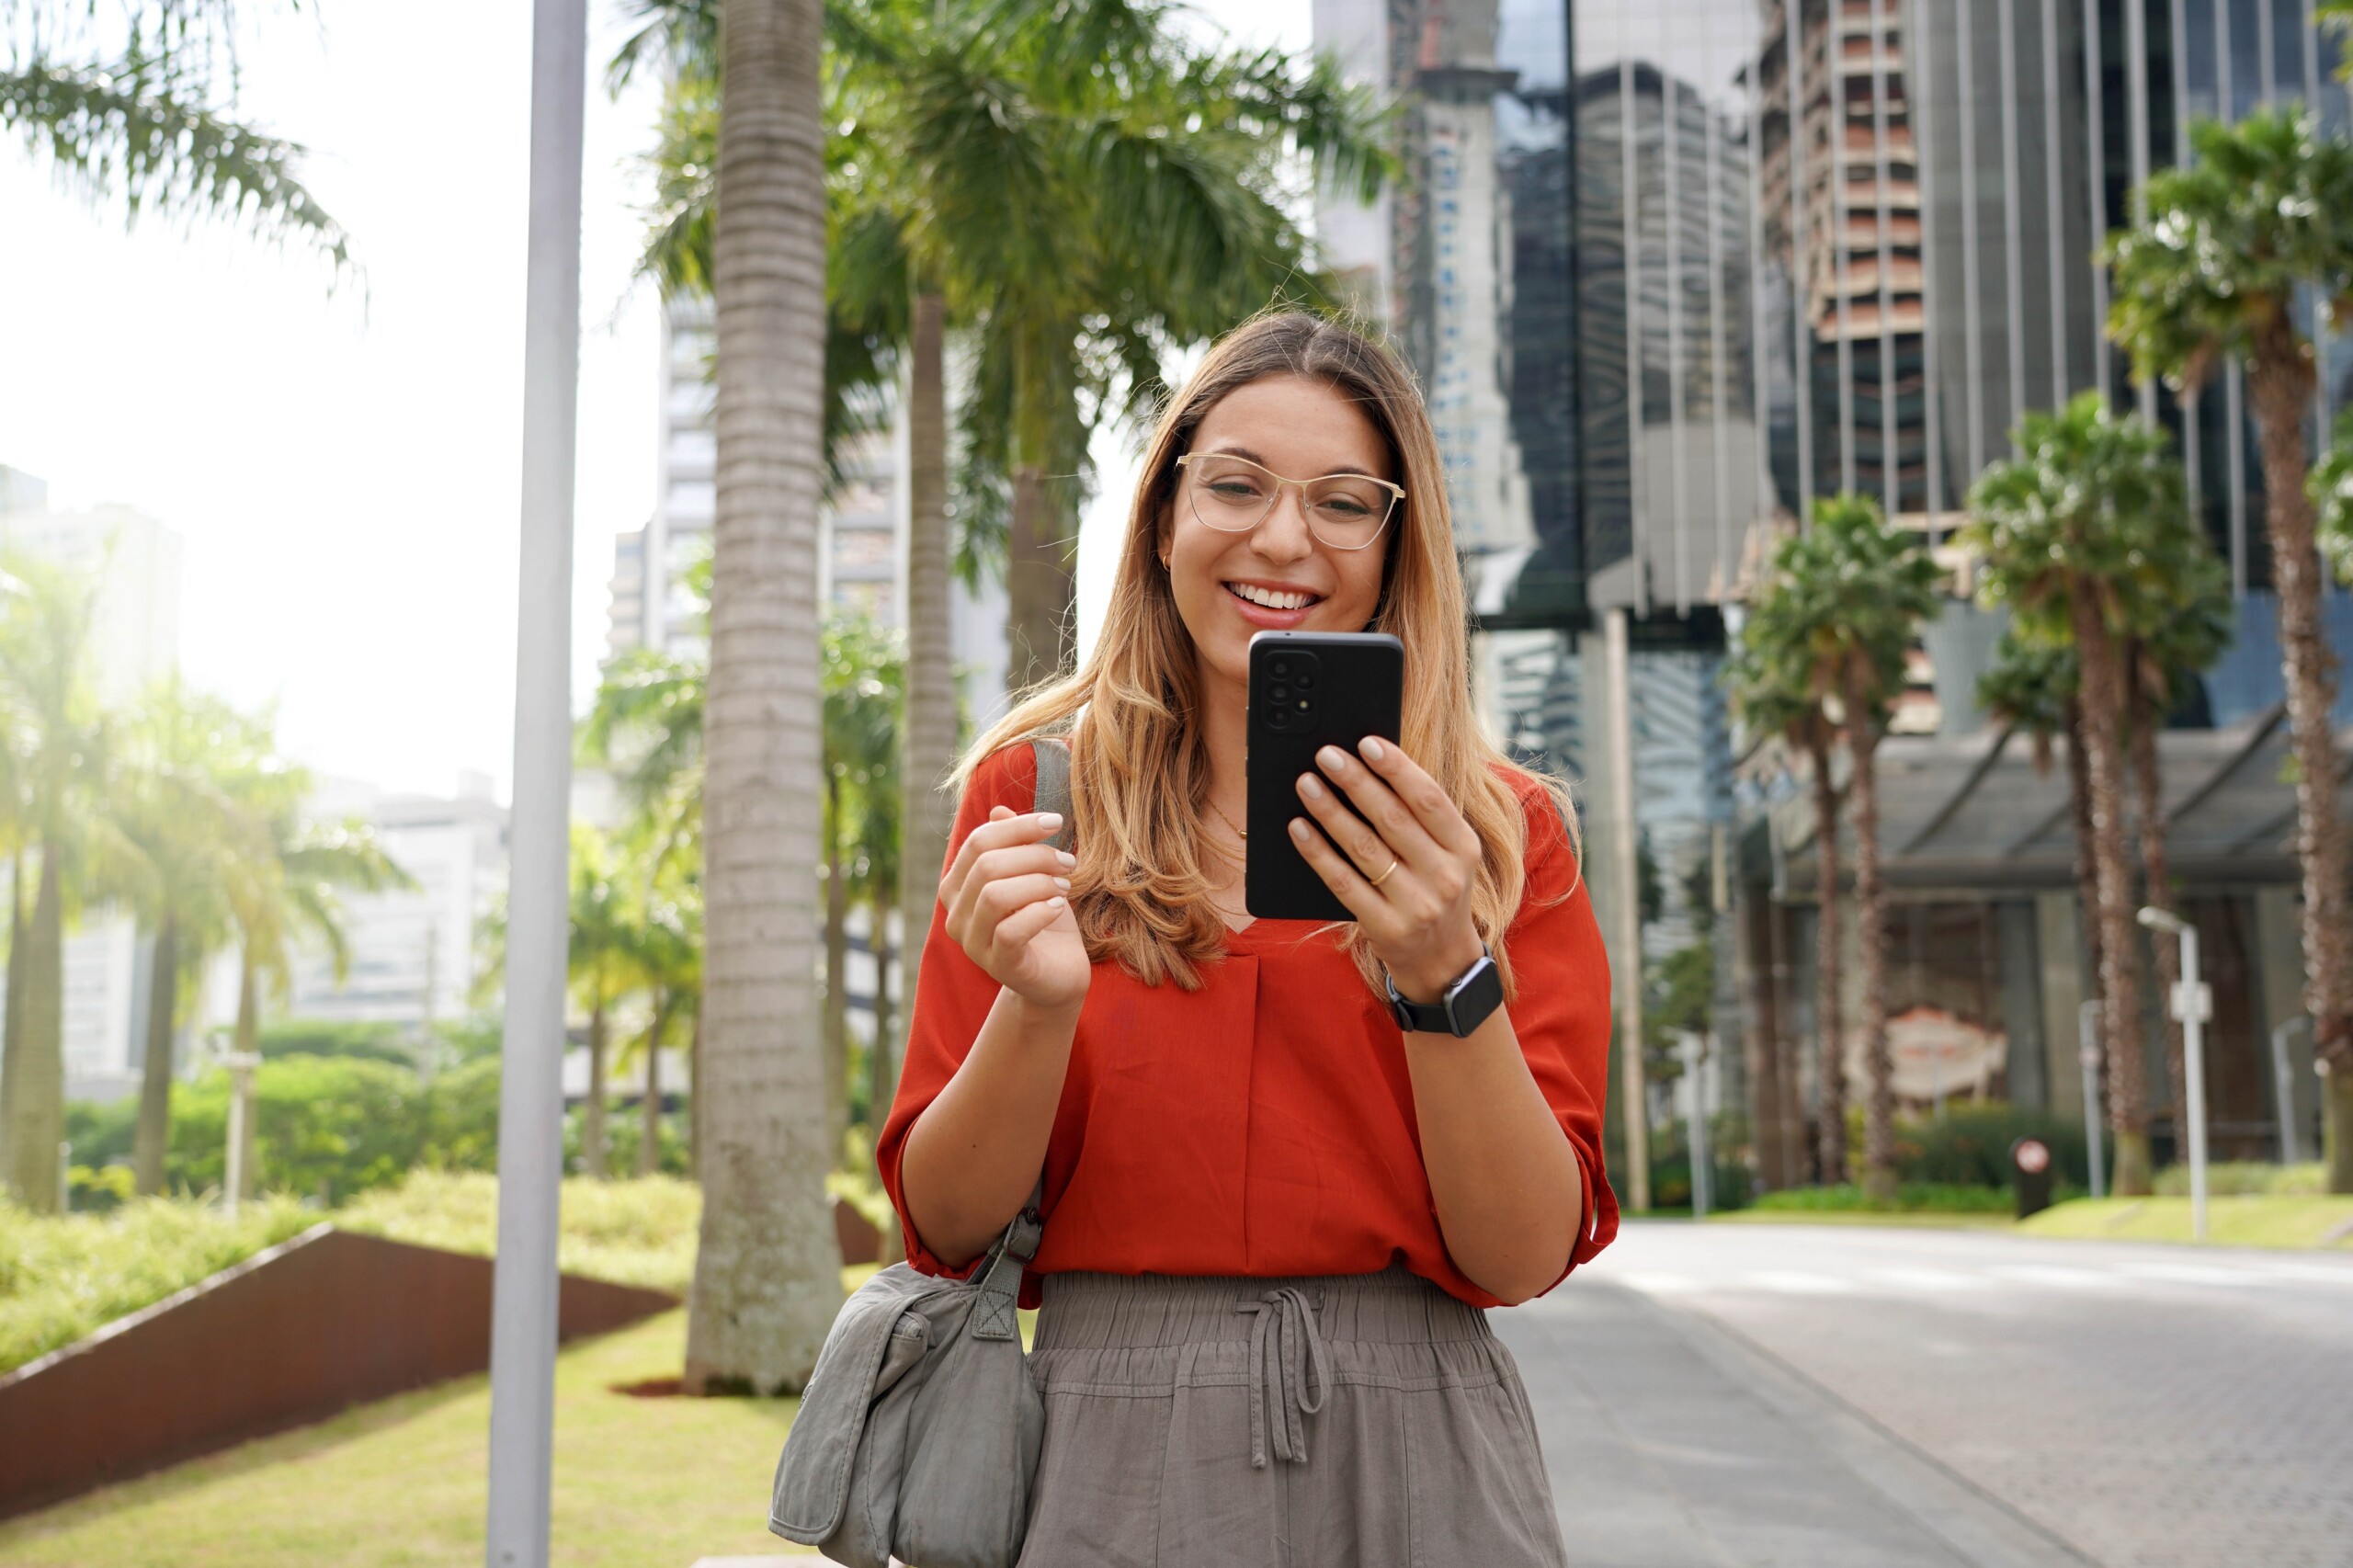 Młoda kobieta korzysta z aplikacji na telefonie, Miami, Floryda, USA, licencja: shutterstock/By Zigres